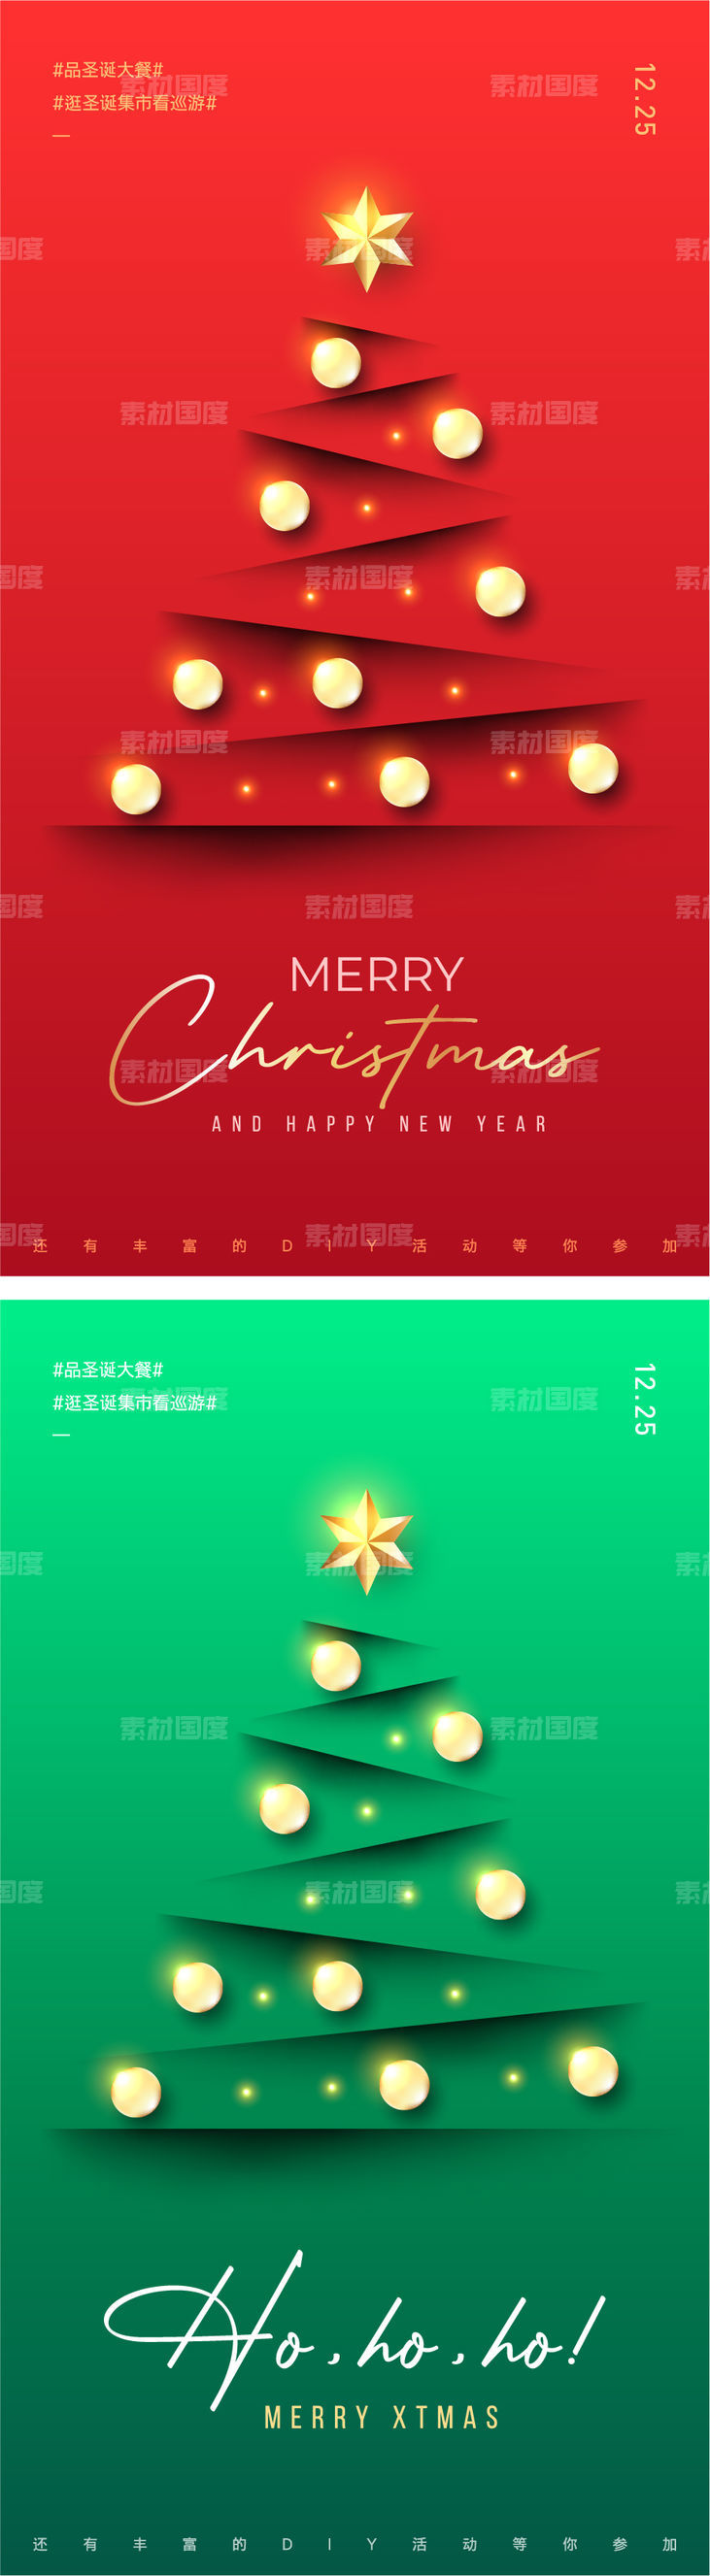 圣诞树圣诞节红色底纹绿色底纹地产简约高端平安夜圣诞礼物背景墙